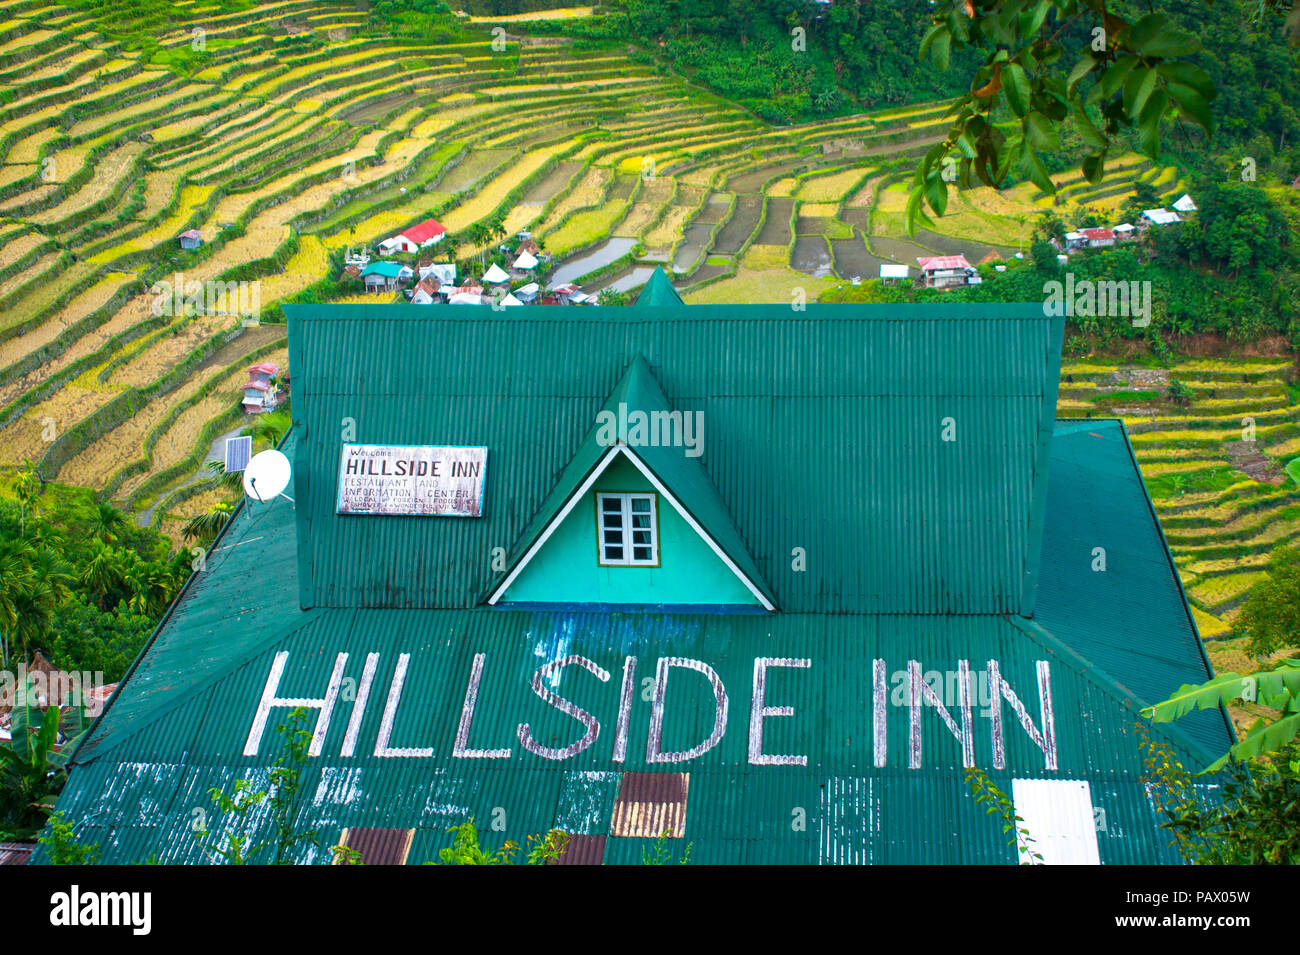 Rustique toit vert de l'inn sur la luxuriante, rizières en terrasse dans le village de Batad - Luzon, Philippines Banque D'Images